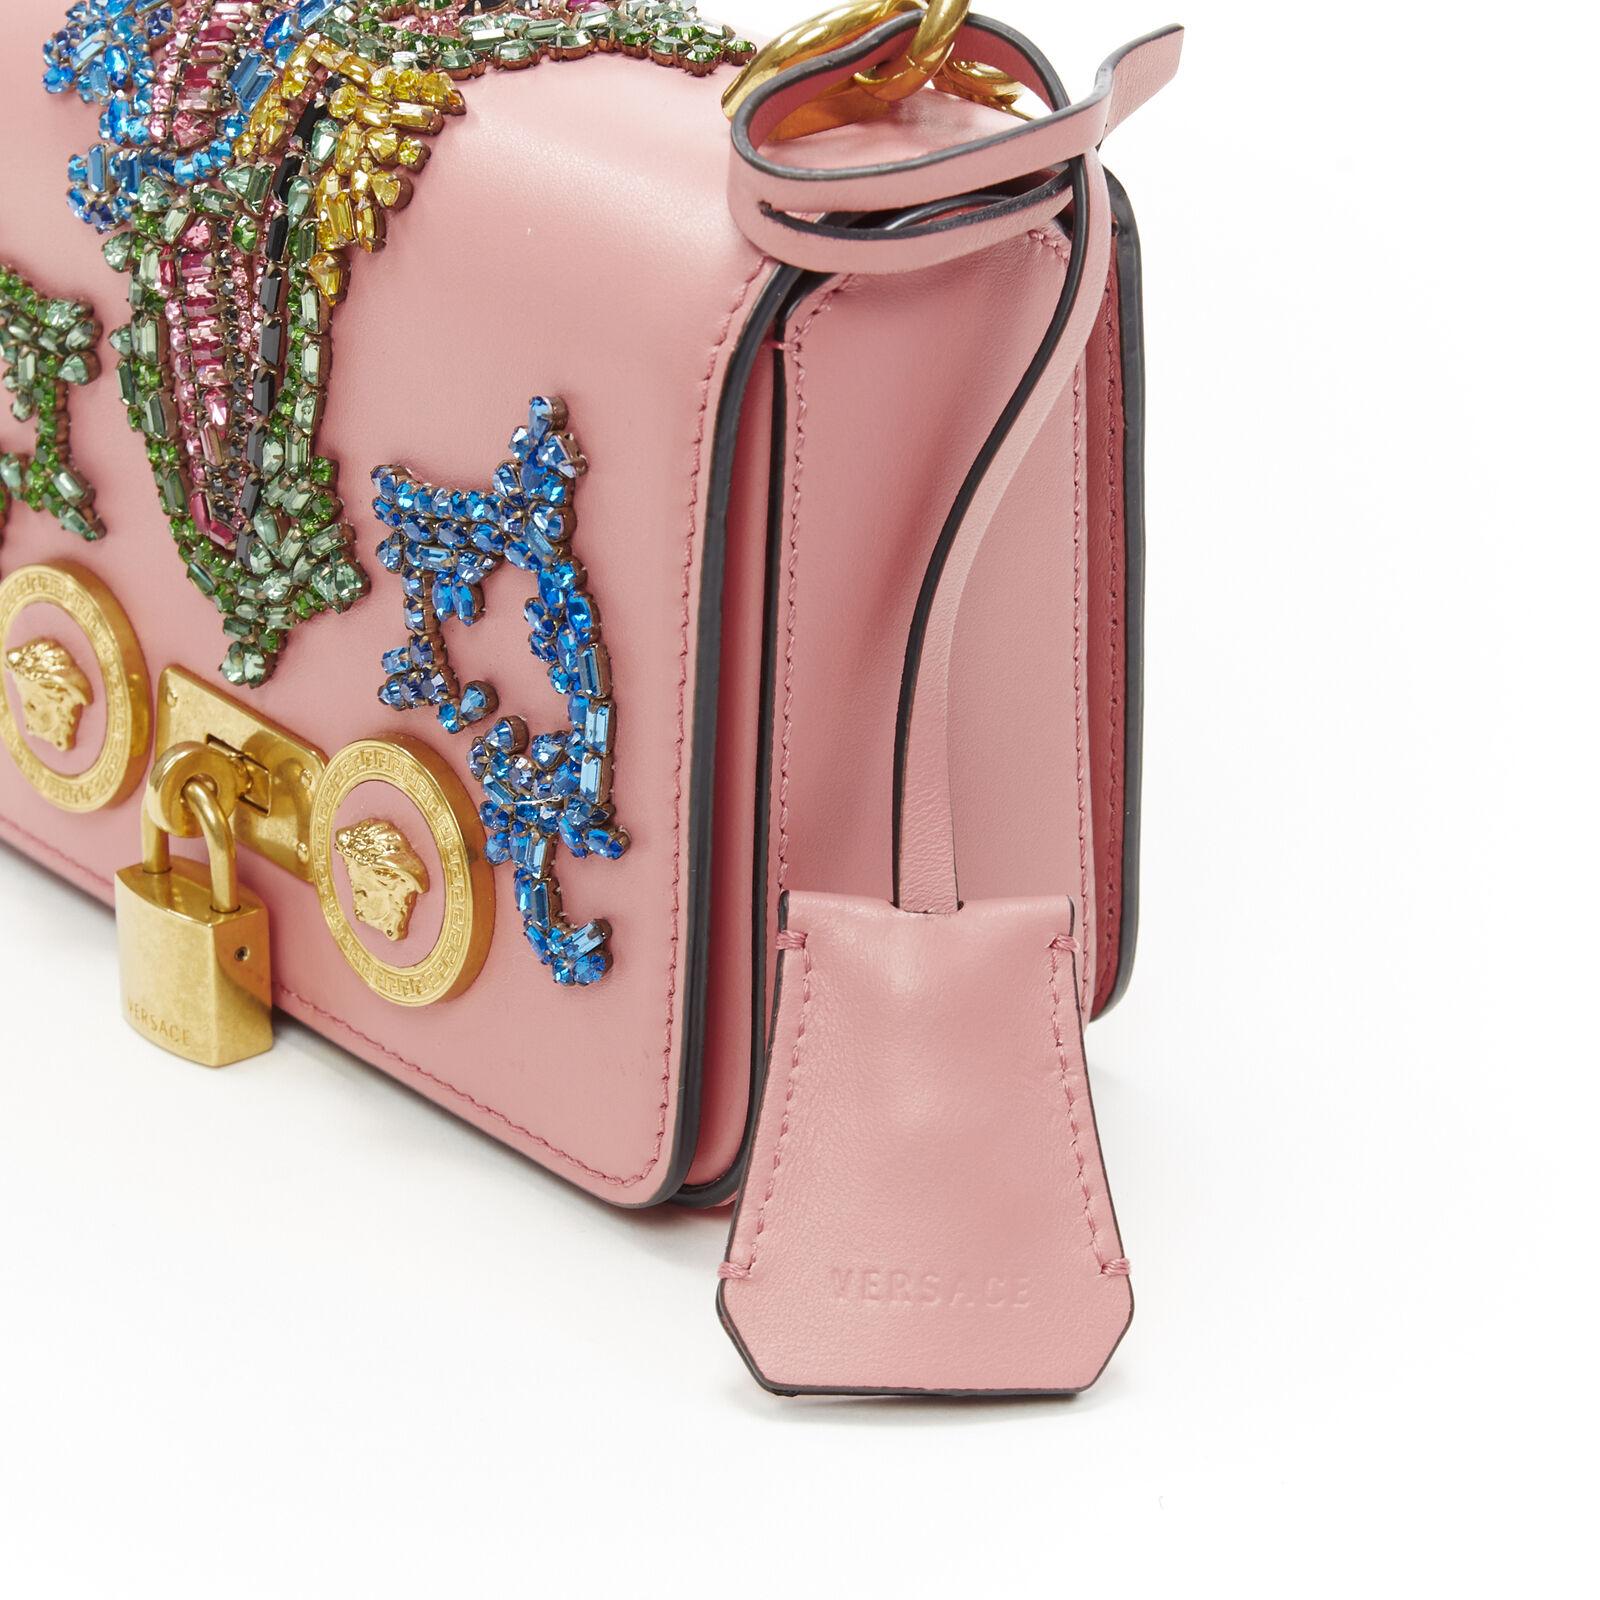 New VERSACE Mini Icon pink baroque Swarovski crystal embellished shoulder bag 2